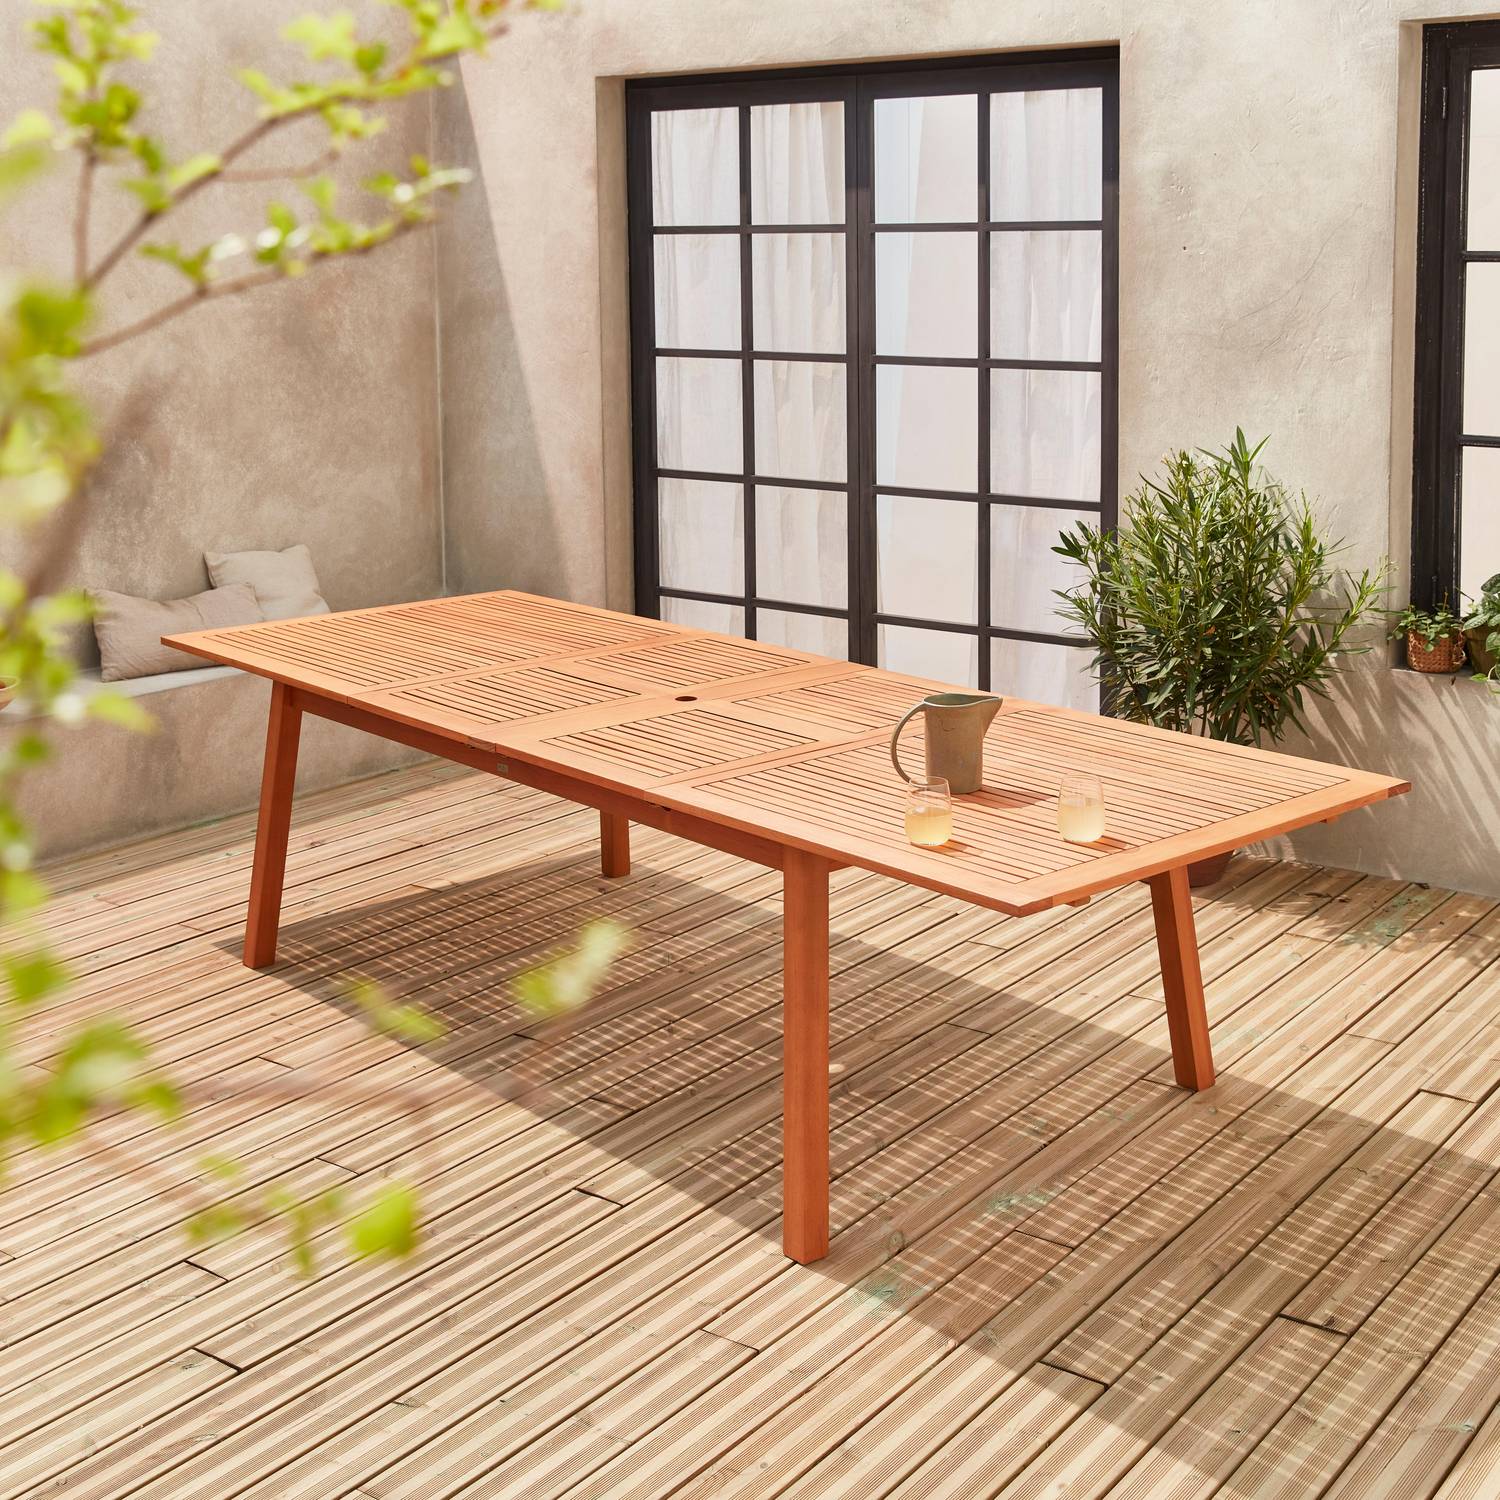 Tavolo da giardino in legno, dimensioni: 200-250-300cm - modello: Almeria - Grande tavolo rettangolare con prolunga, in eucalipto FSC Photo8